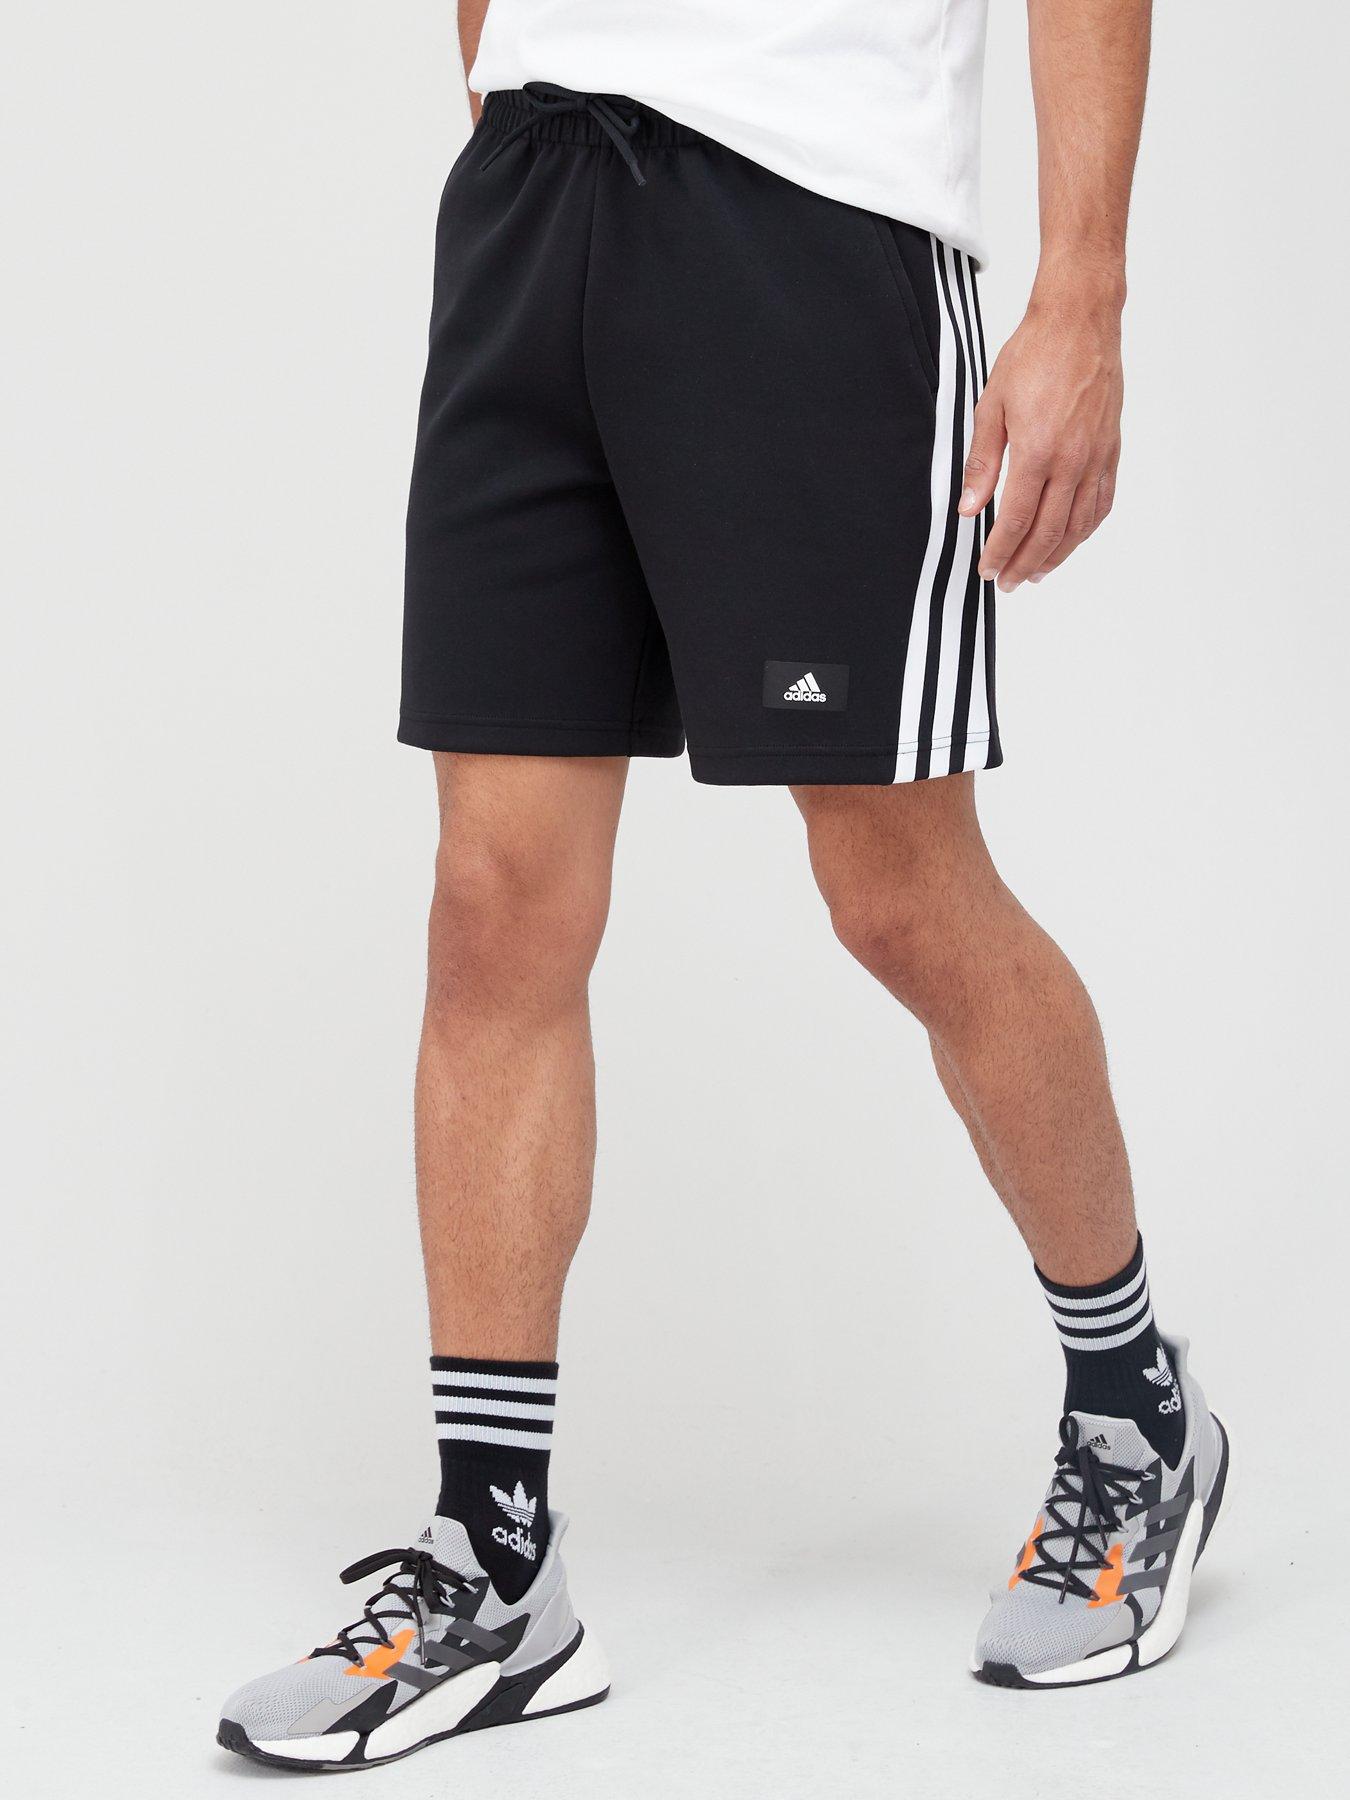  Future Icon 3 Stripe Shorts - Black